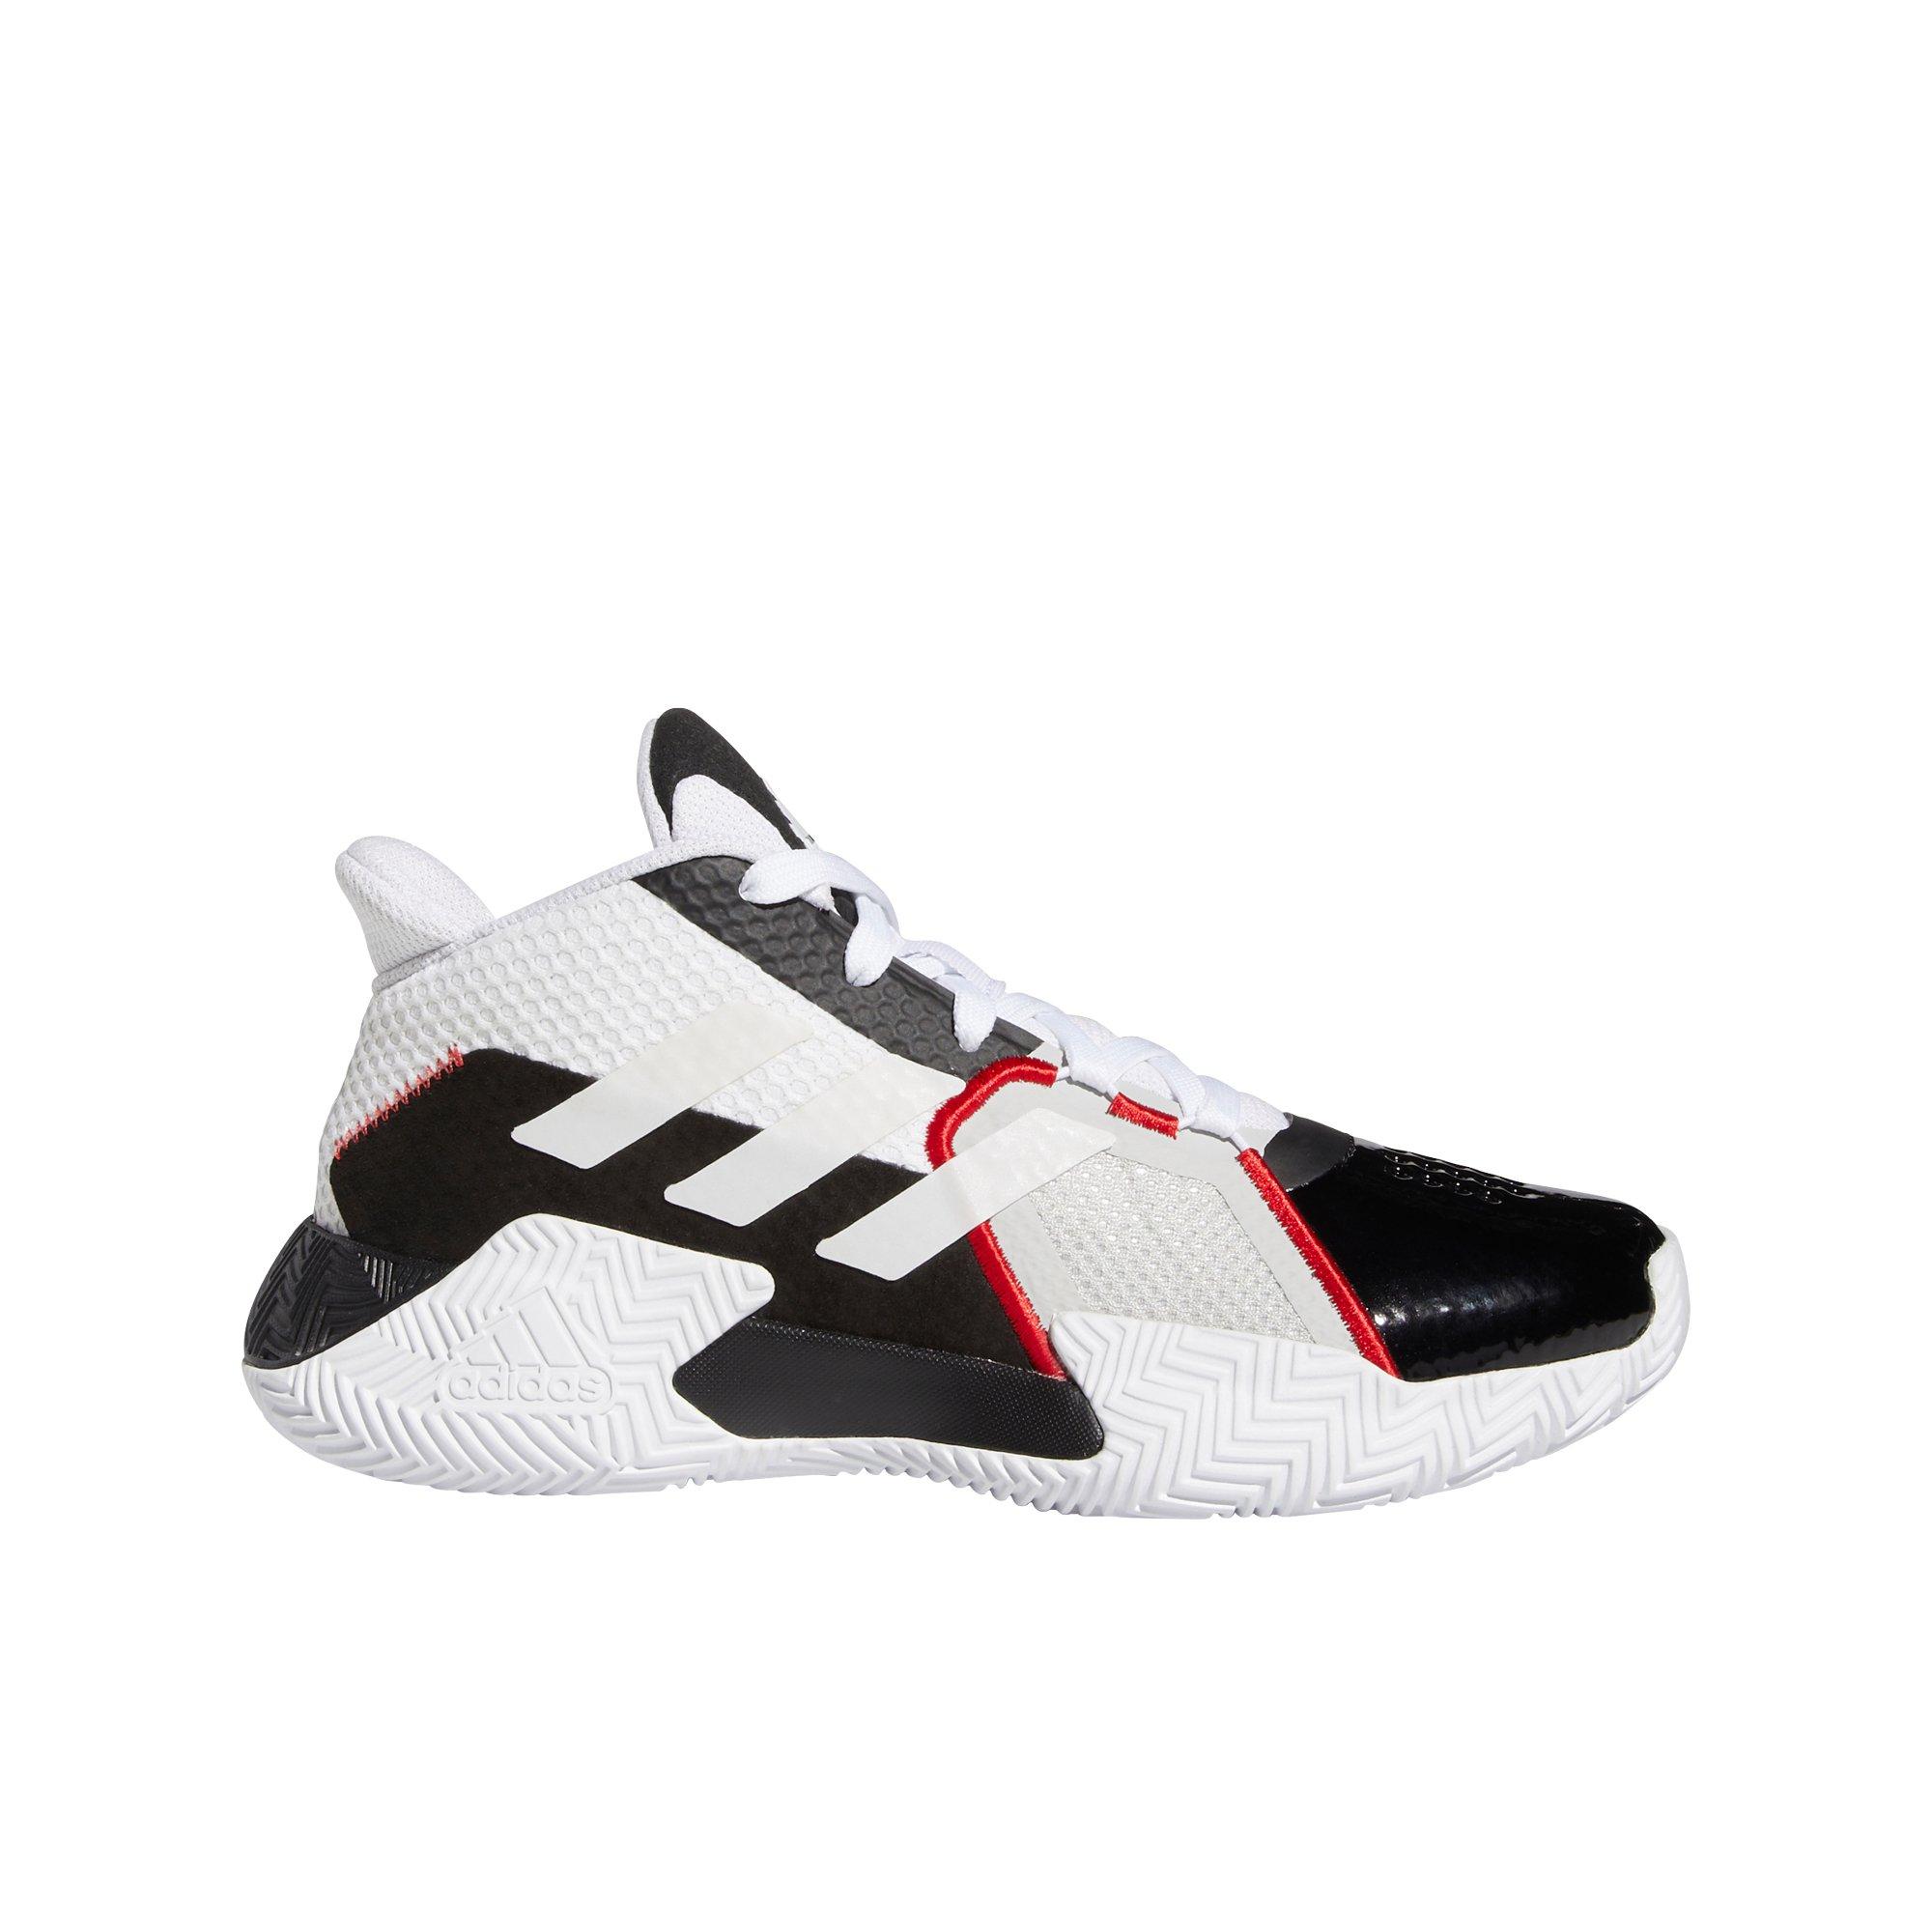 hibbett sports adidas shoes